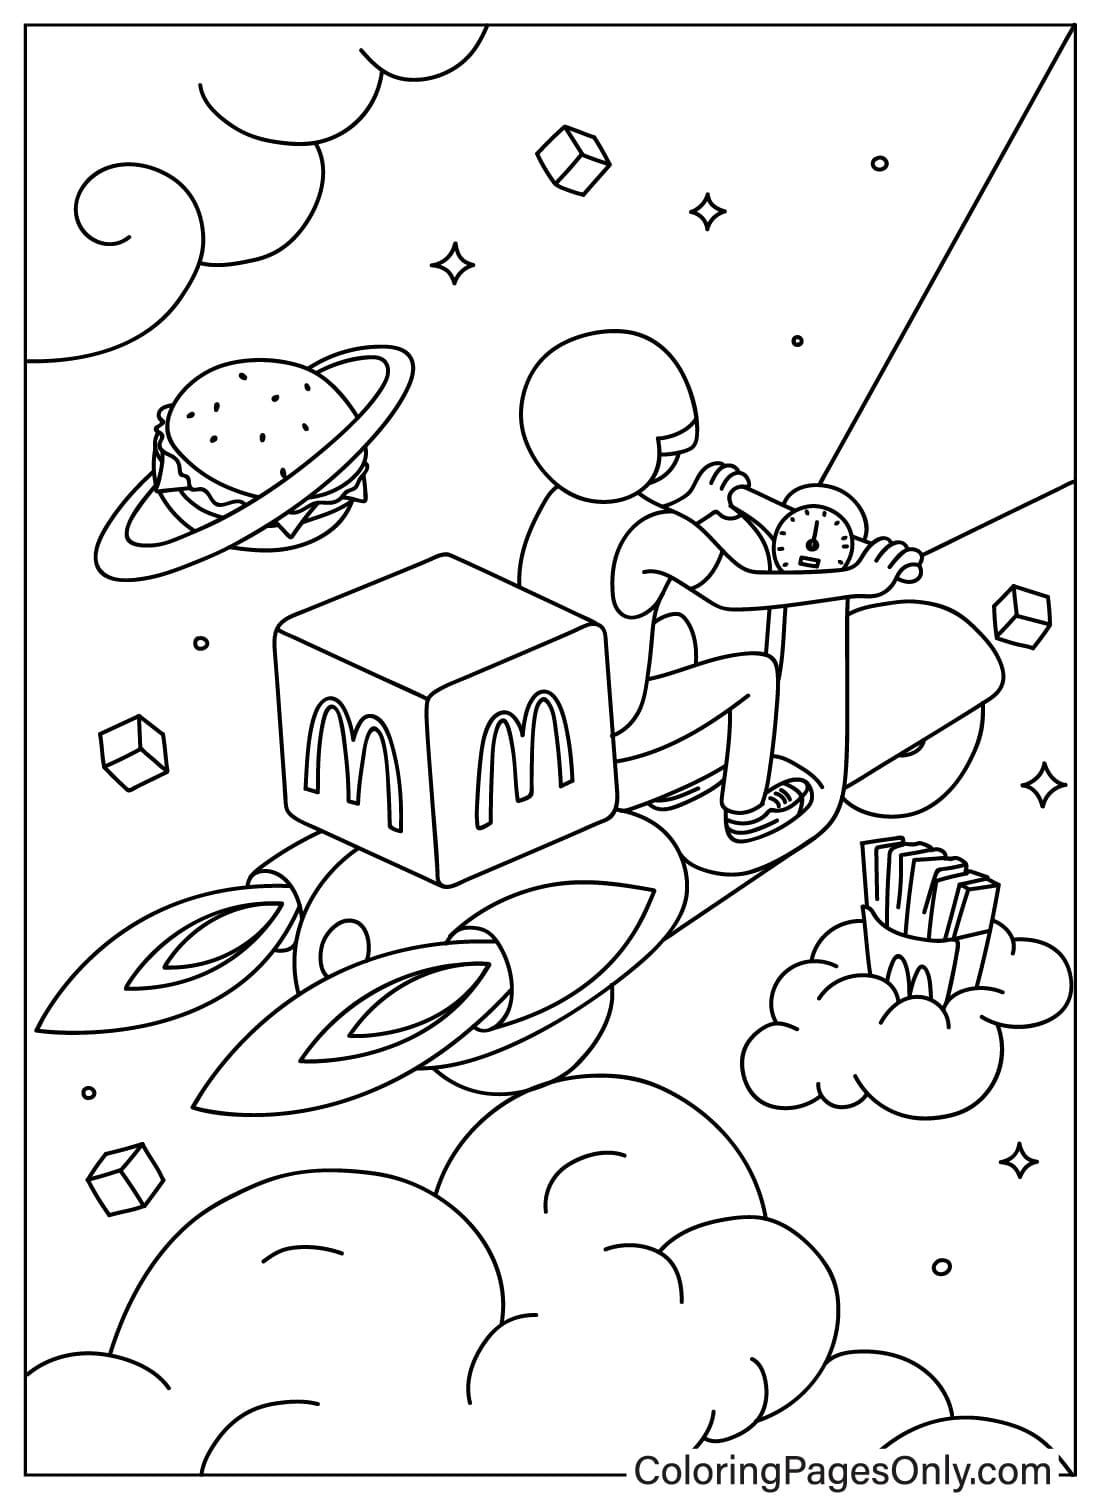 Desenho para colorir McDonalds do McDonald's